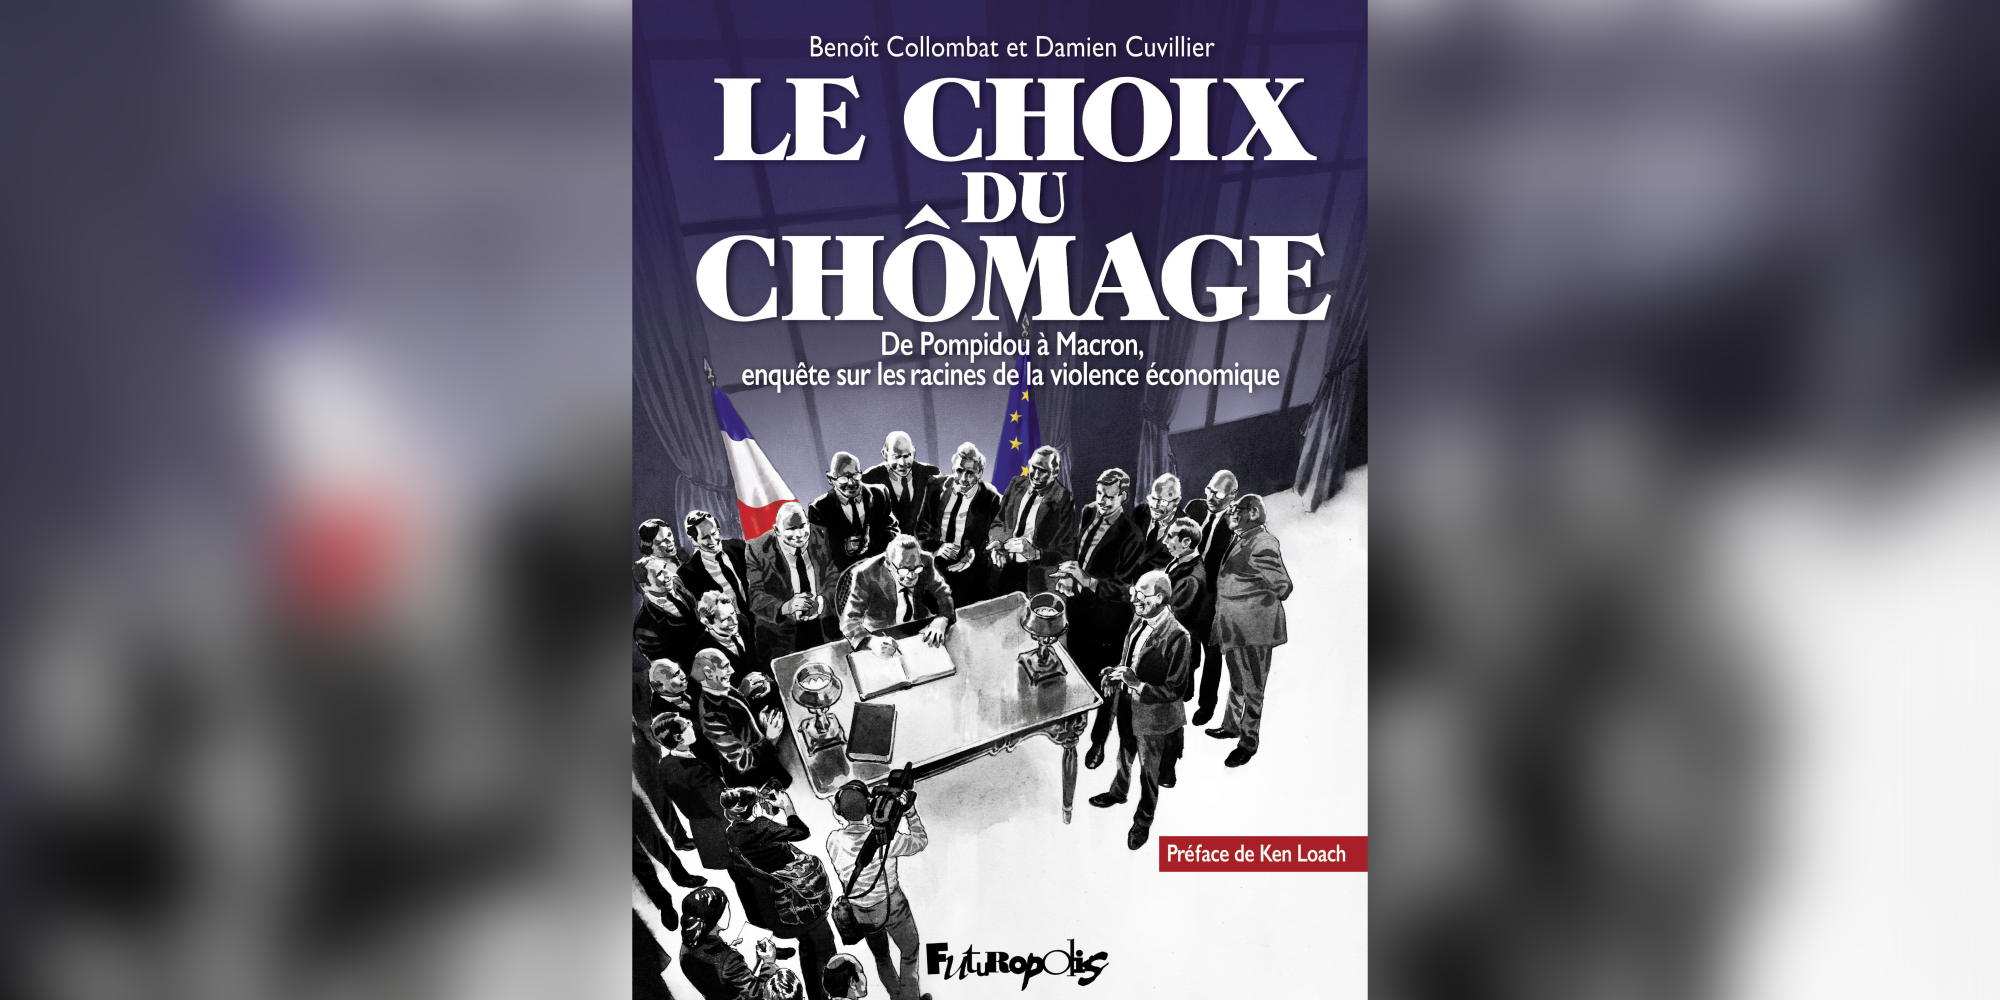 “Avant même l’arrivée au pouvoir de Mitterrand, le “tournant” de la rigueur était déjà prévu.” Rencontre avec les auteurs de la BD Le Choix du chômage (I)